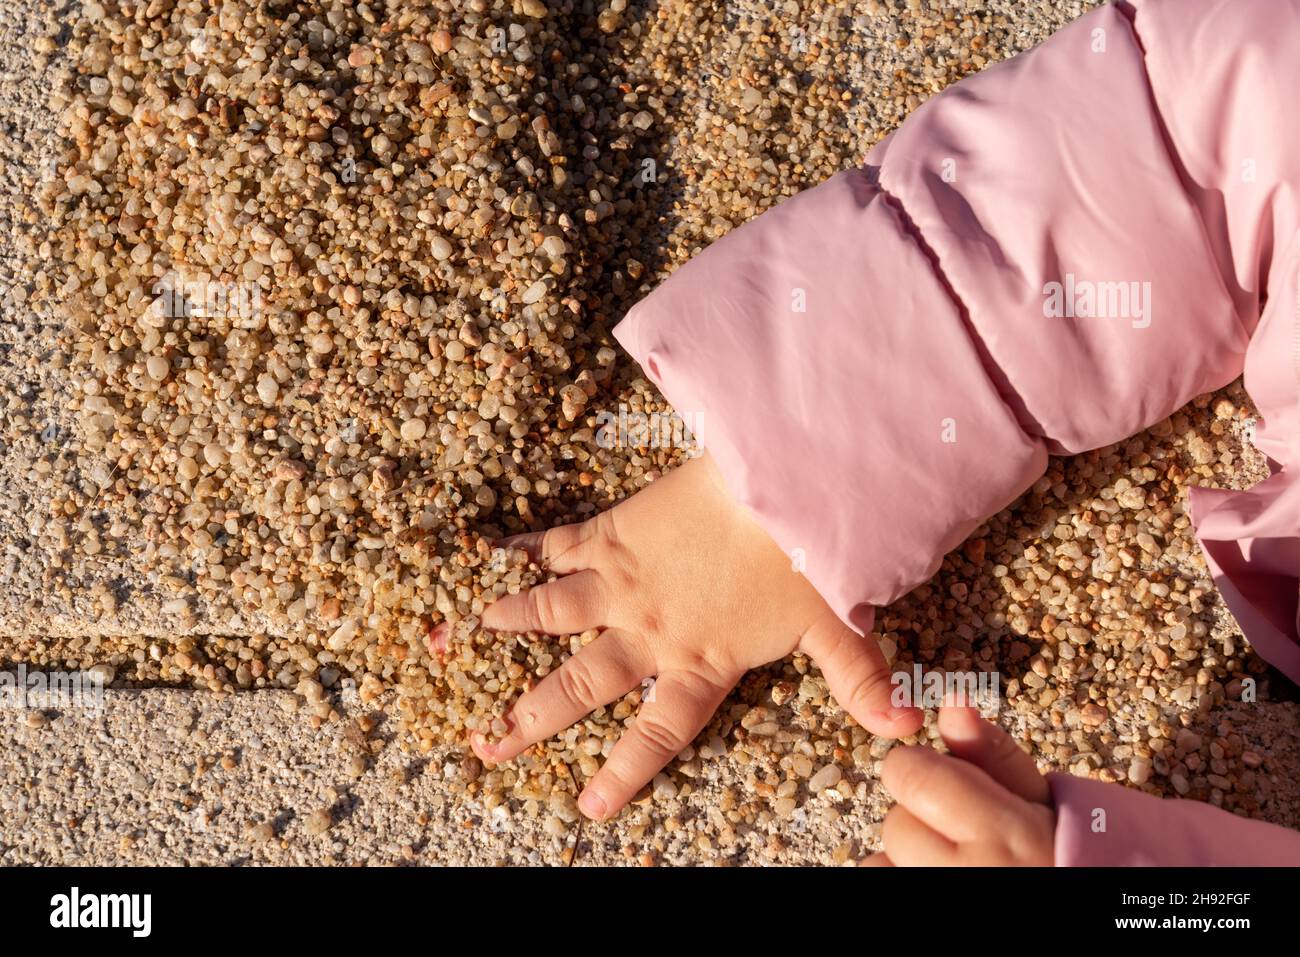 la main des enfants prend une poignée de sable Banque D'Images